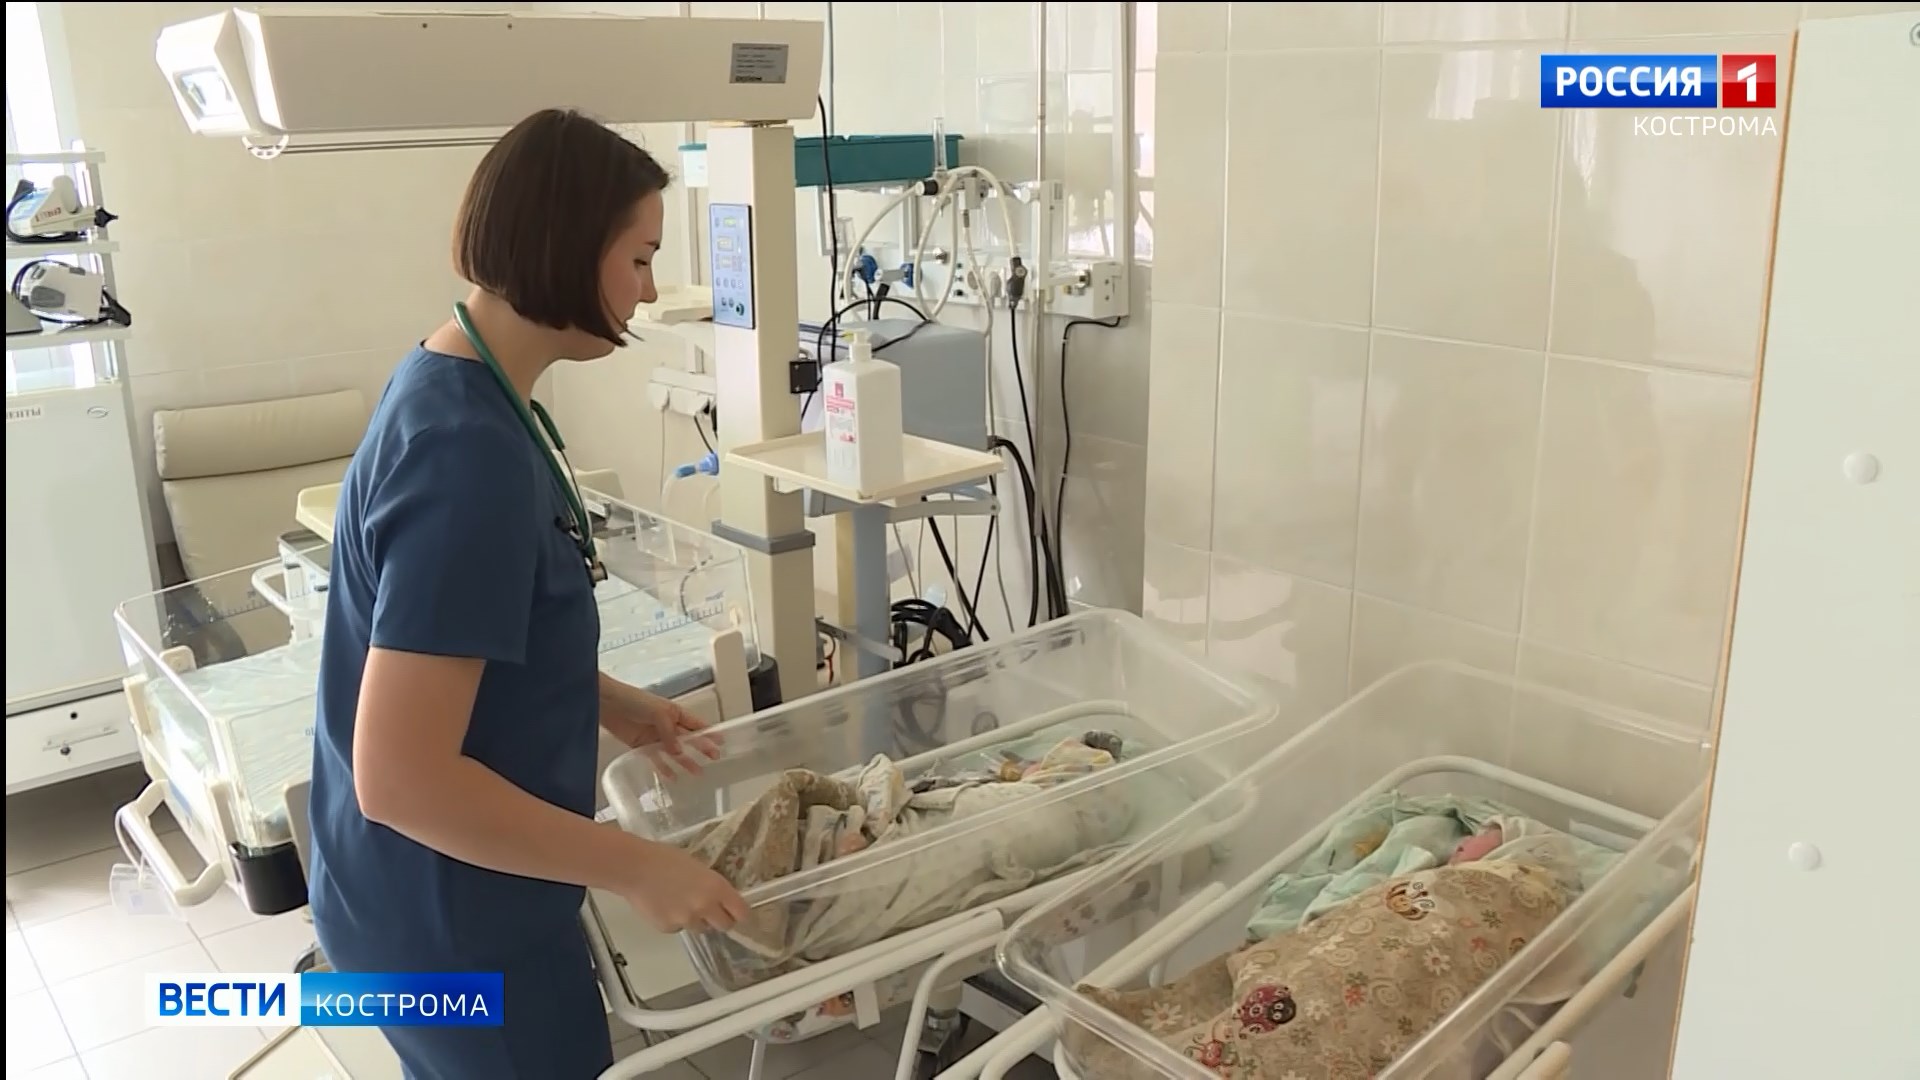 ЗАГС огласил самые популярные имена для новорожденных в Костроме